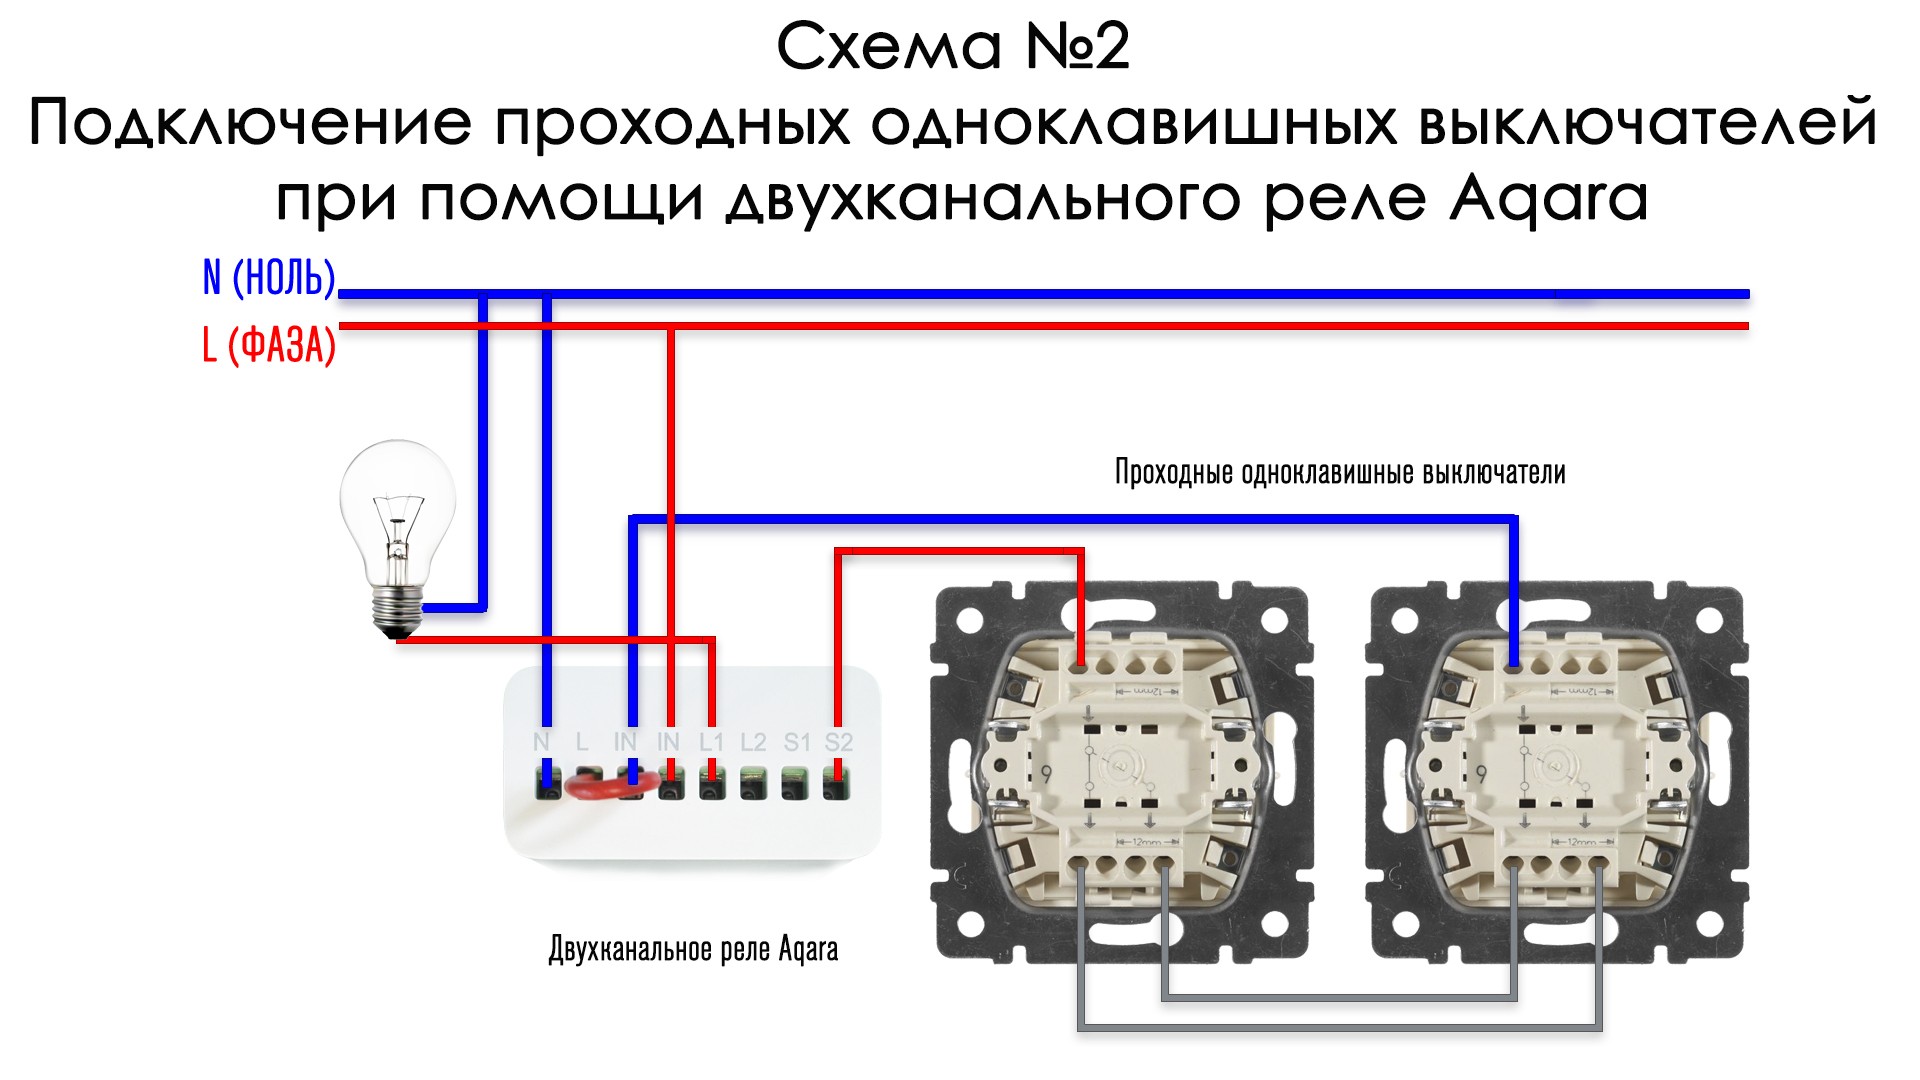 Как подключить выключатель с нулем. Aqara проходной выключатель схема. Реле Aqara подключение проходного двухклавишного выключателя. Выключатель Aqara схема. Схема подключения двухклавишного проходного переключателя Веркель.